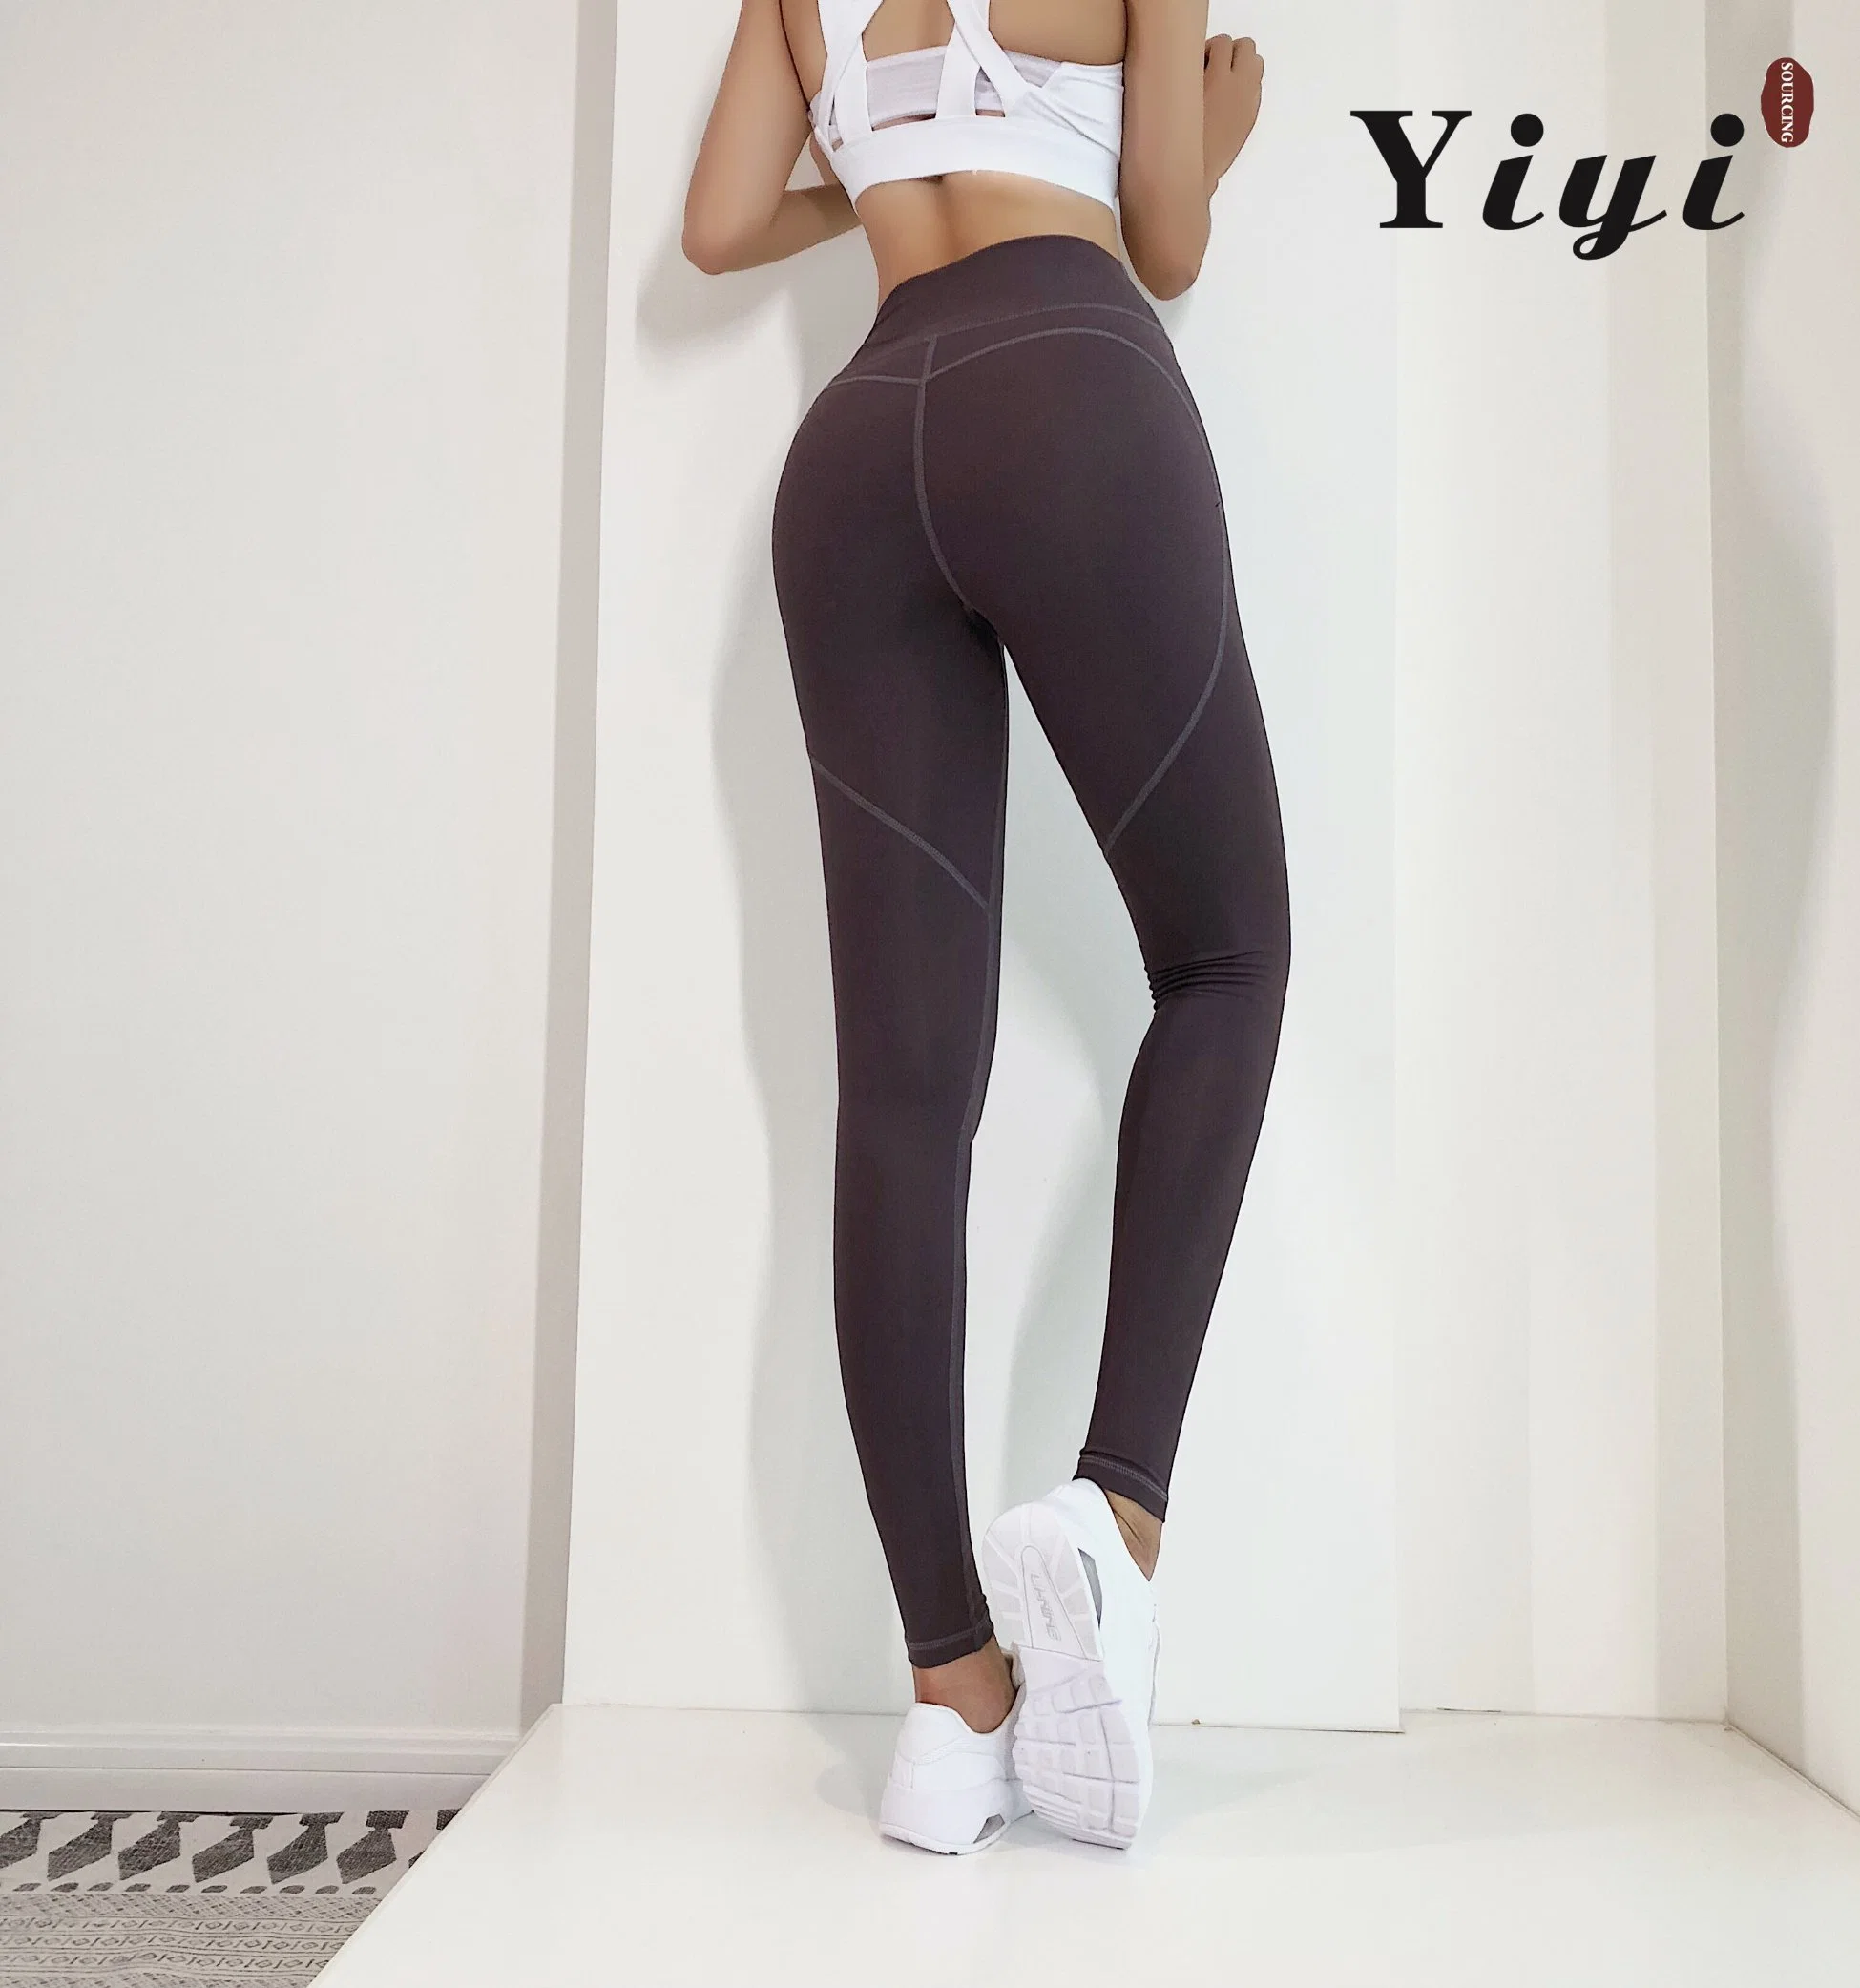 Logotipo personalizado la mujer perfecta Butt deporte de levantamiento de renegociación de la ejecución de cintura alta Gym Fitness Trainer pantalones de yoga